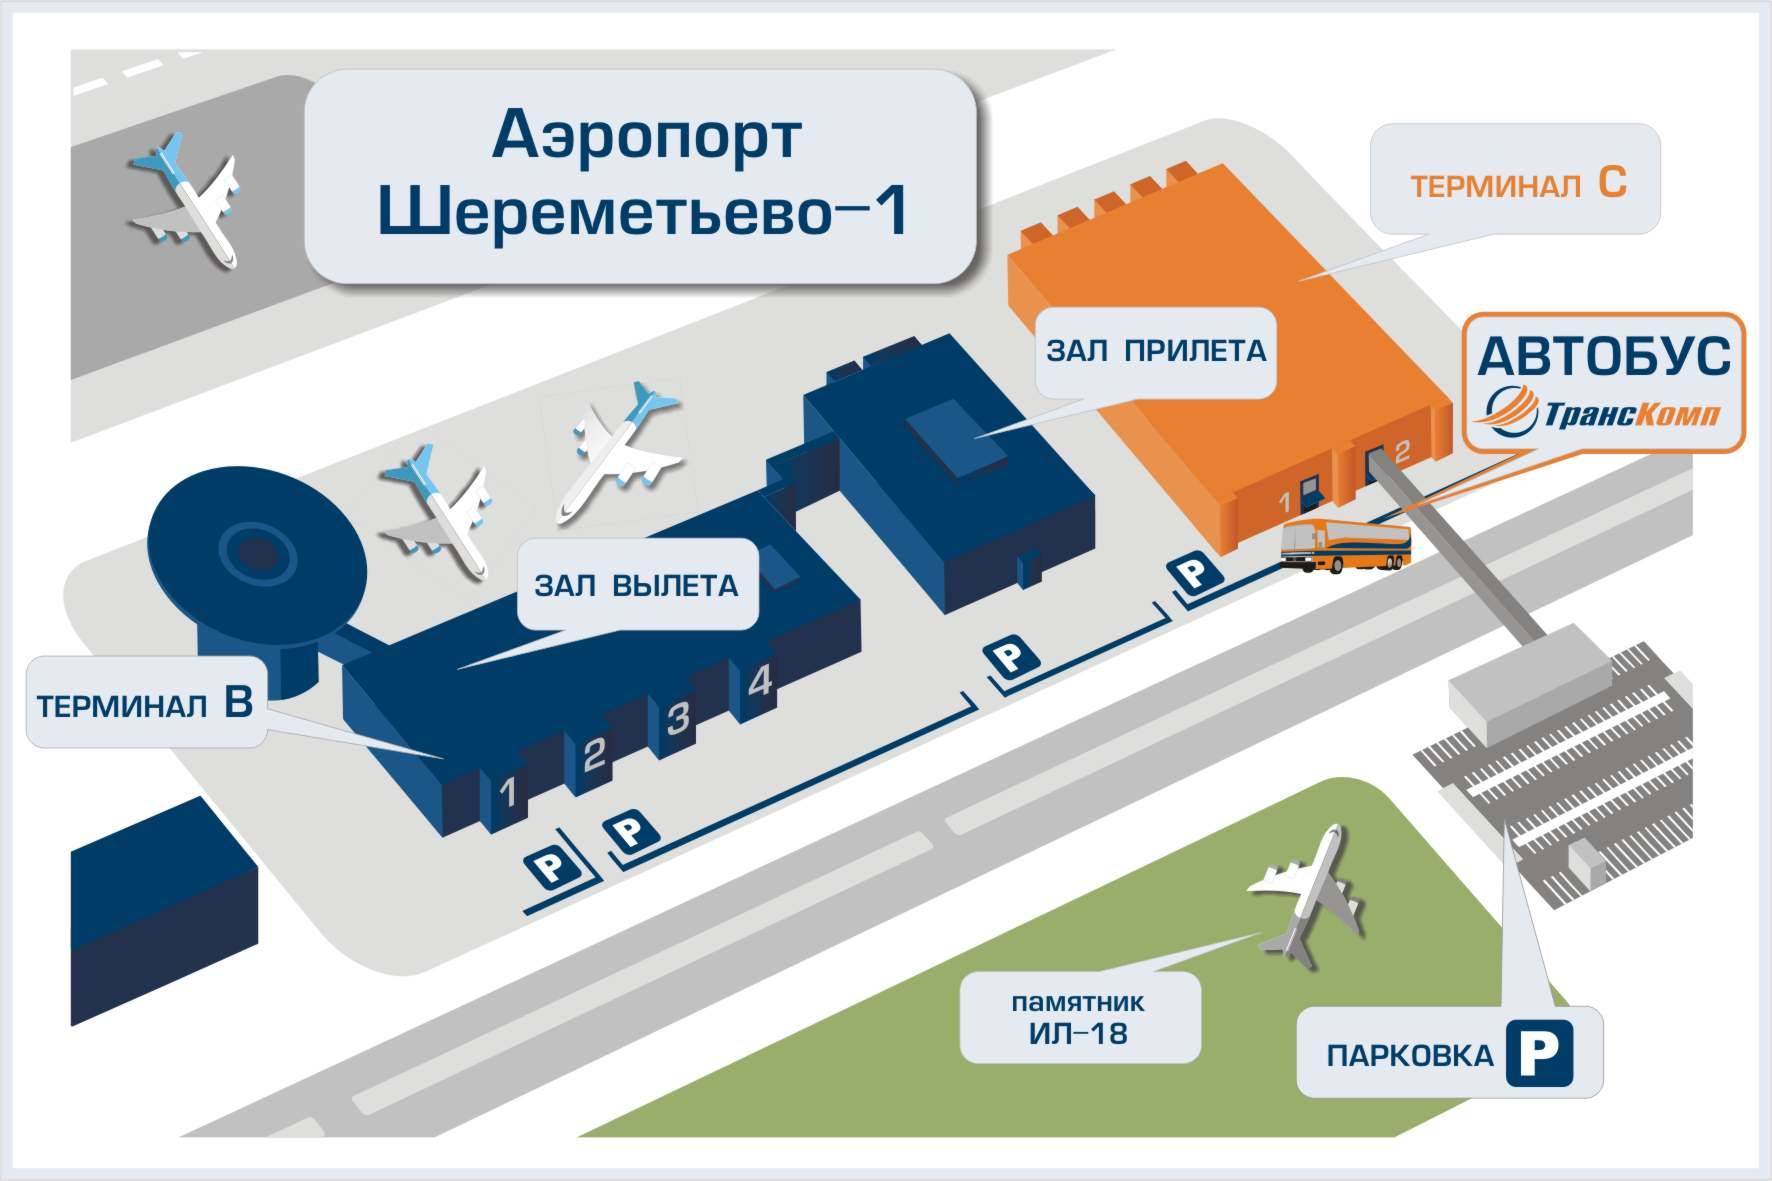 Аэропорт москва шереметьево терминалы. Схема аэропорта Шереметьево с терминалами. Терминал в Шереметьево схема аэропорта терминал в. Аэропорт Шереметьево терминал b схема. Аэропорт Шереметьево расположение терминалов.